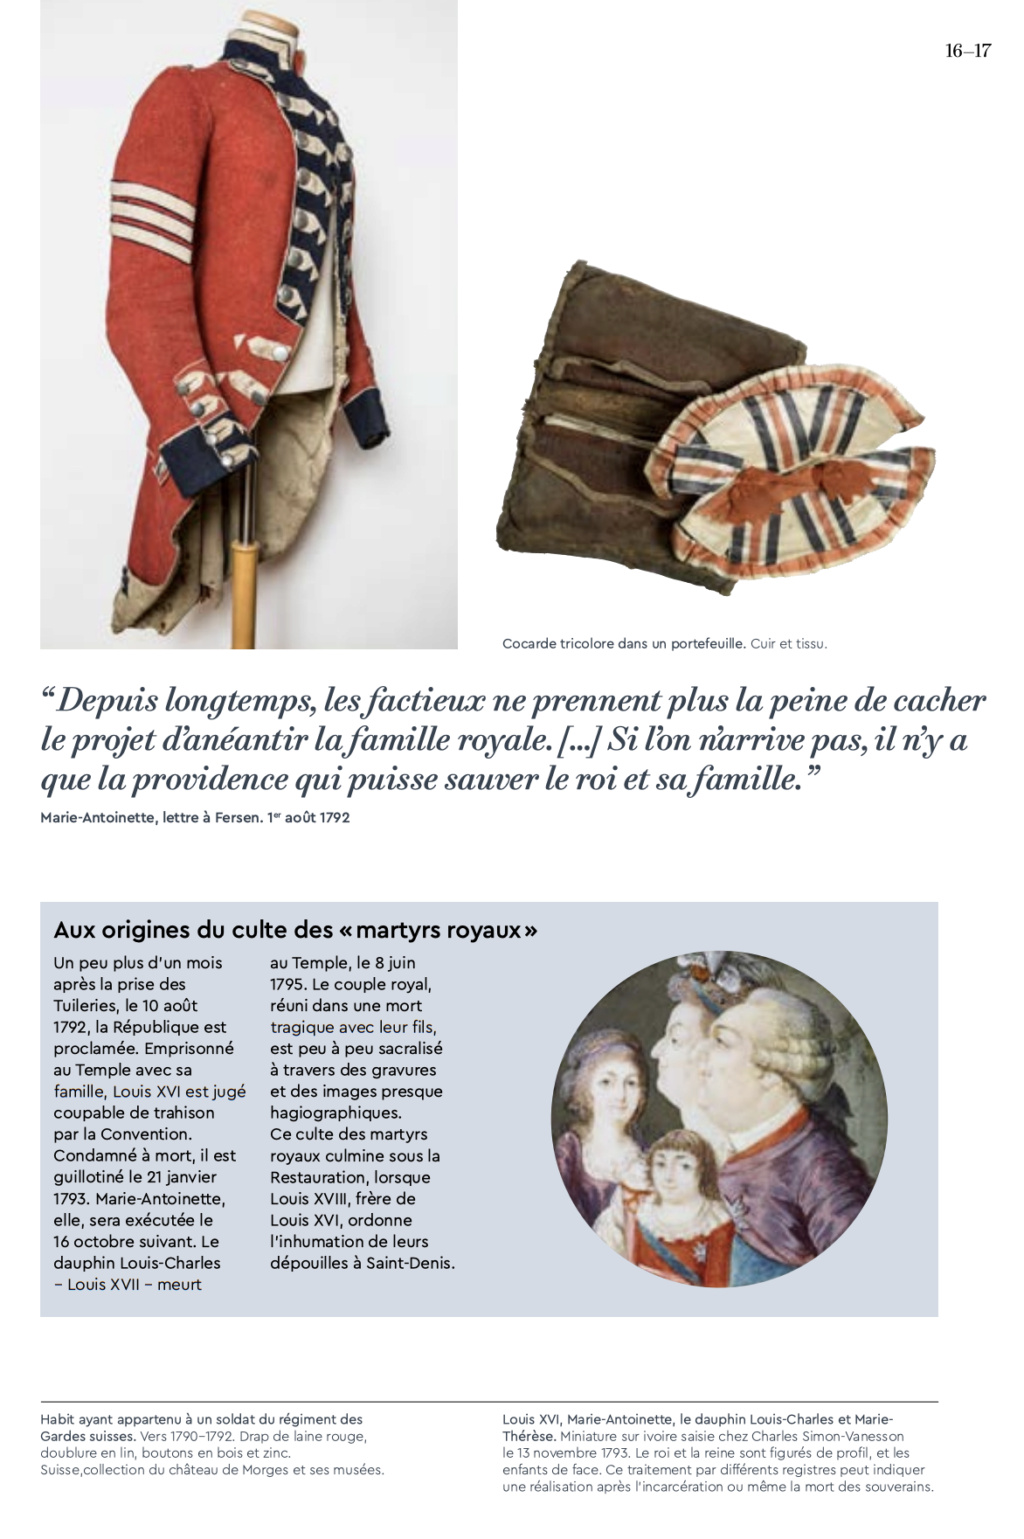 Exposition aux Archives nationales : Louis XVI, Marie-Antoinette et la Révolution, la famille royale aux Tuileries  Capt4826